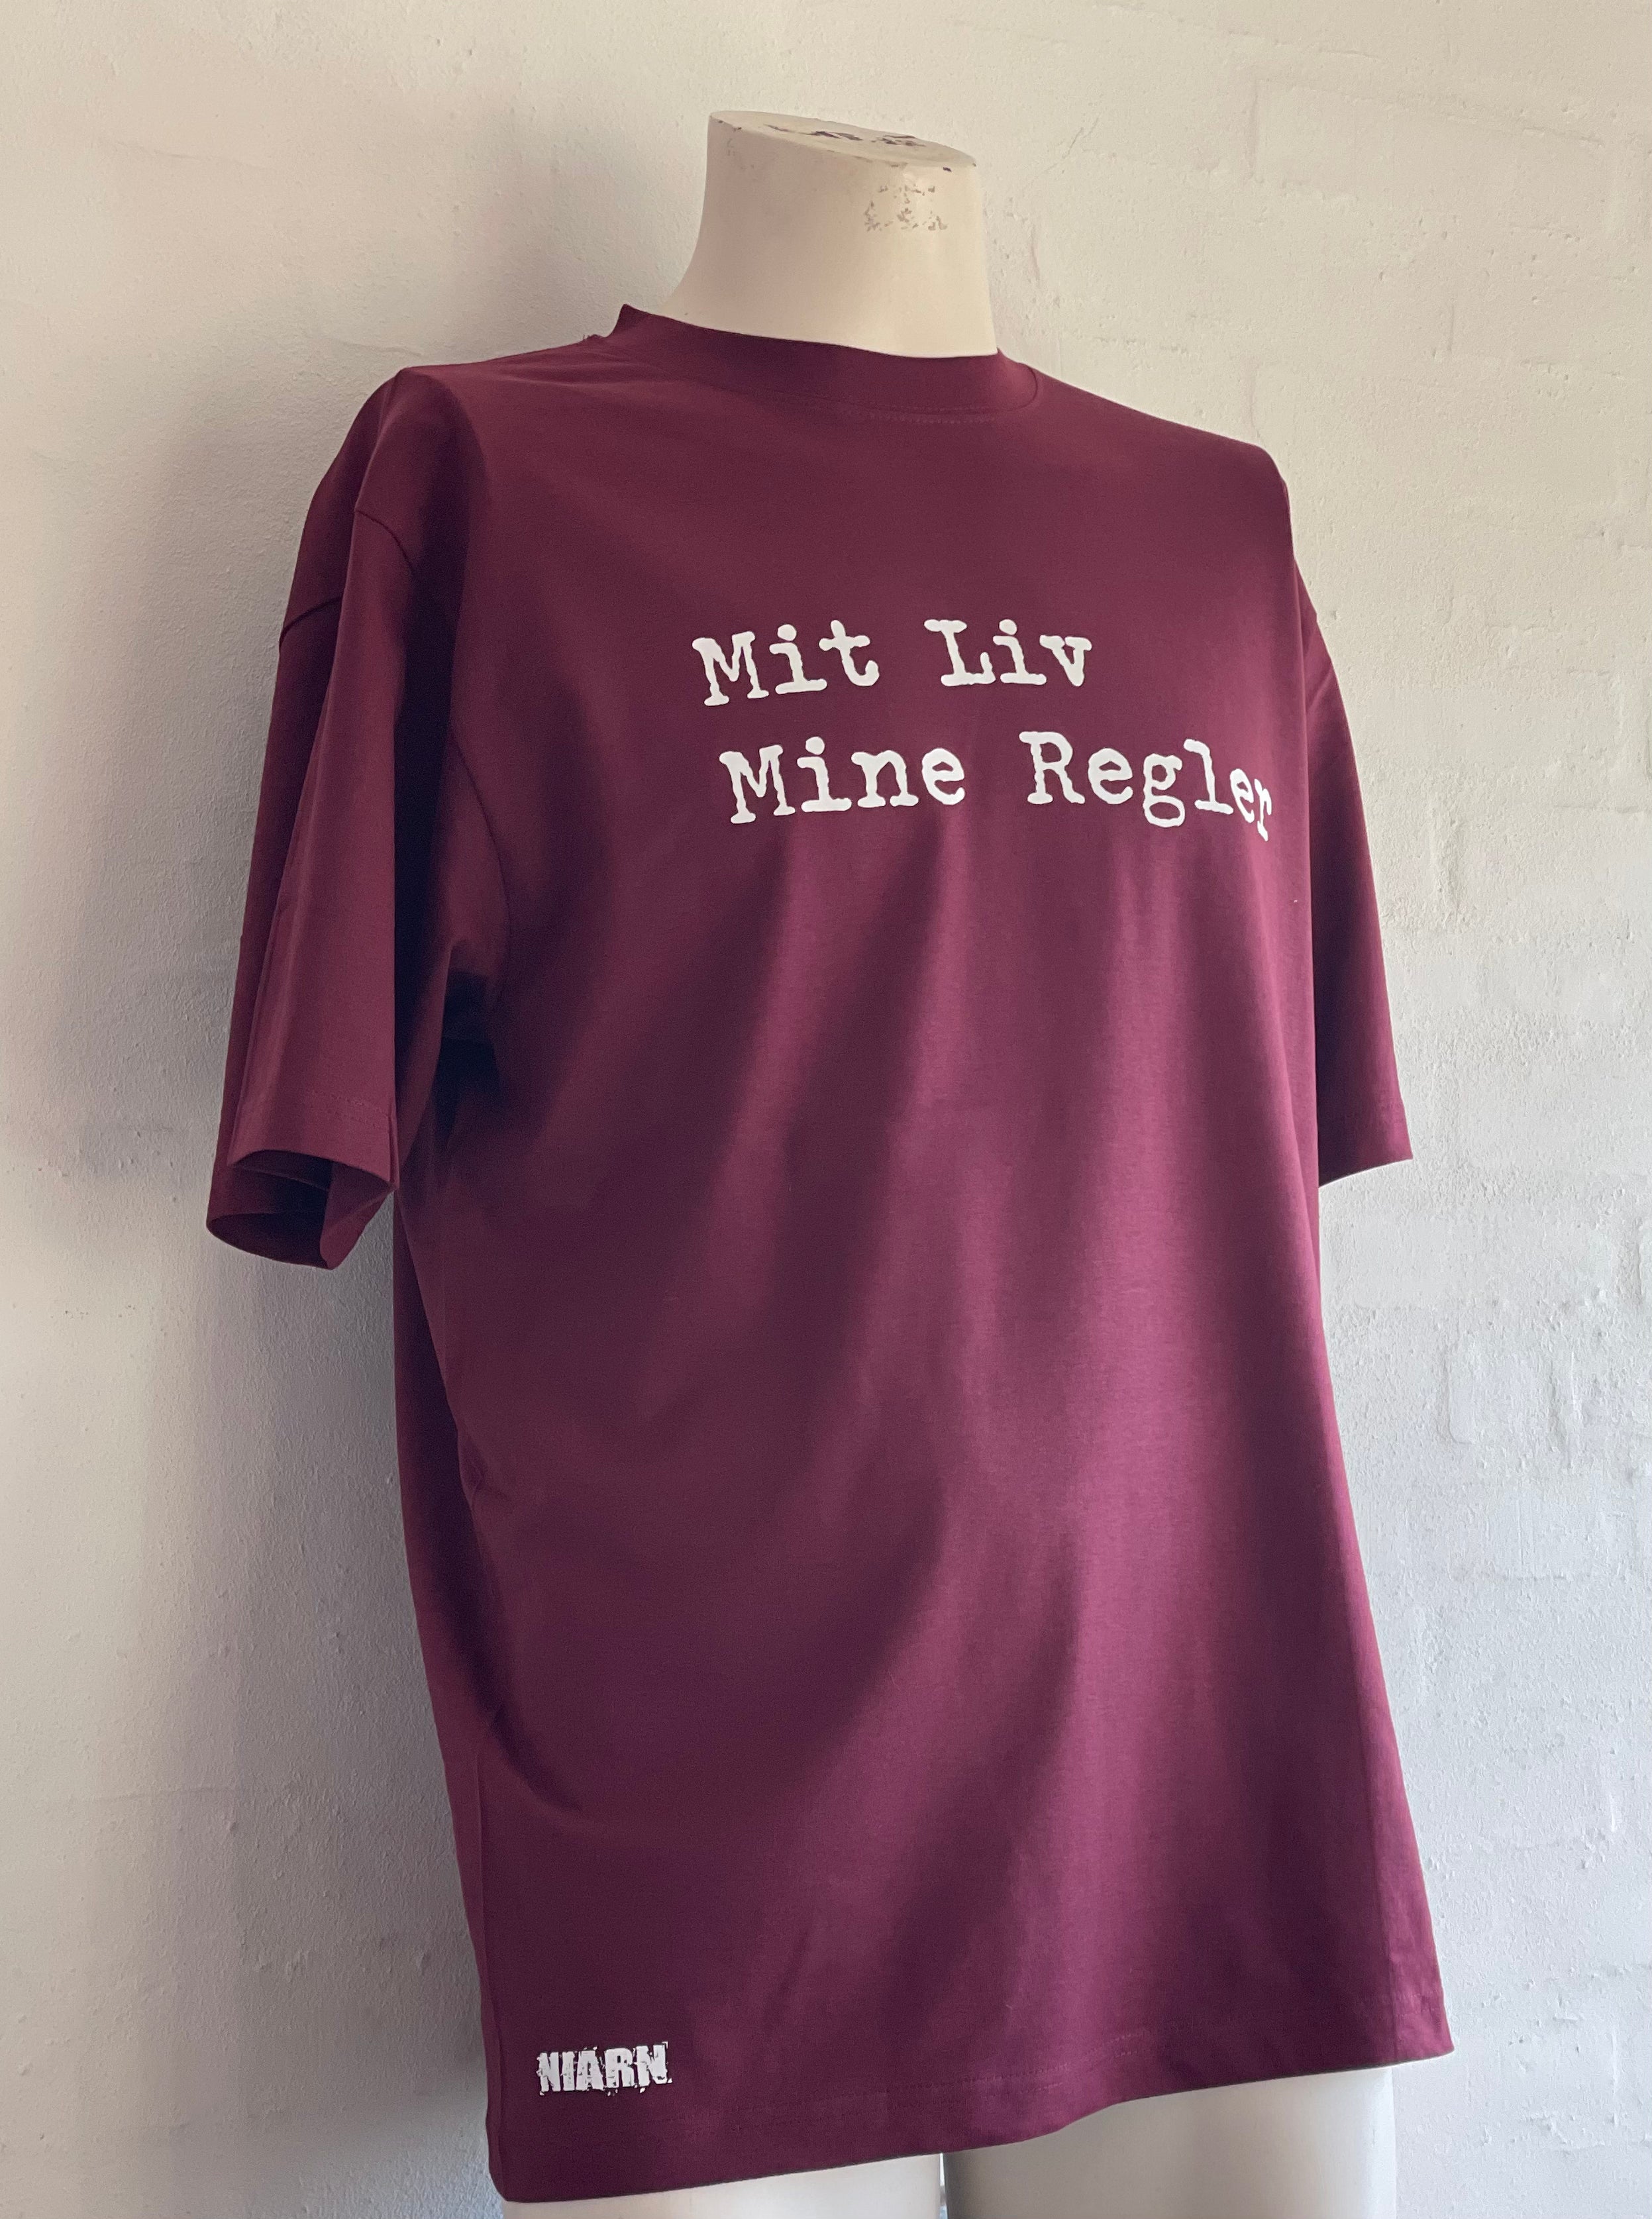 Mit Liv Mine Regler T-Shirt - Burgundy